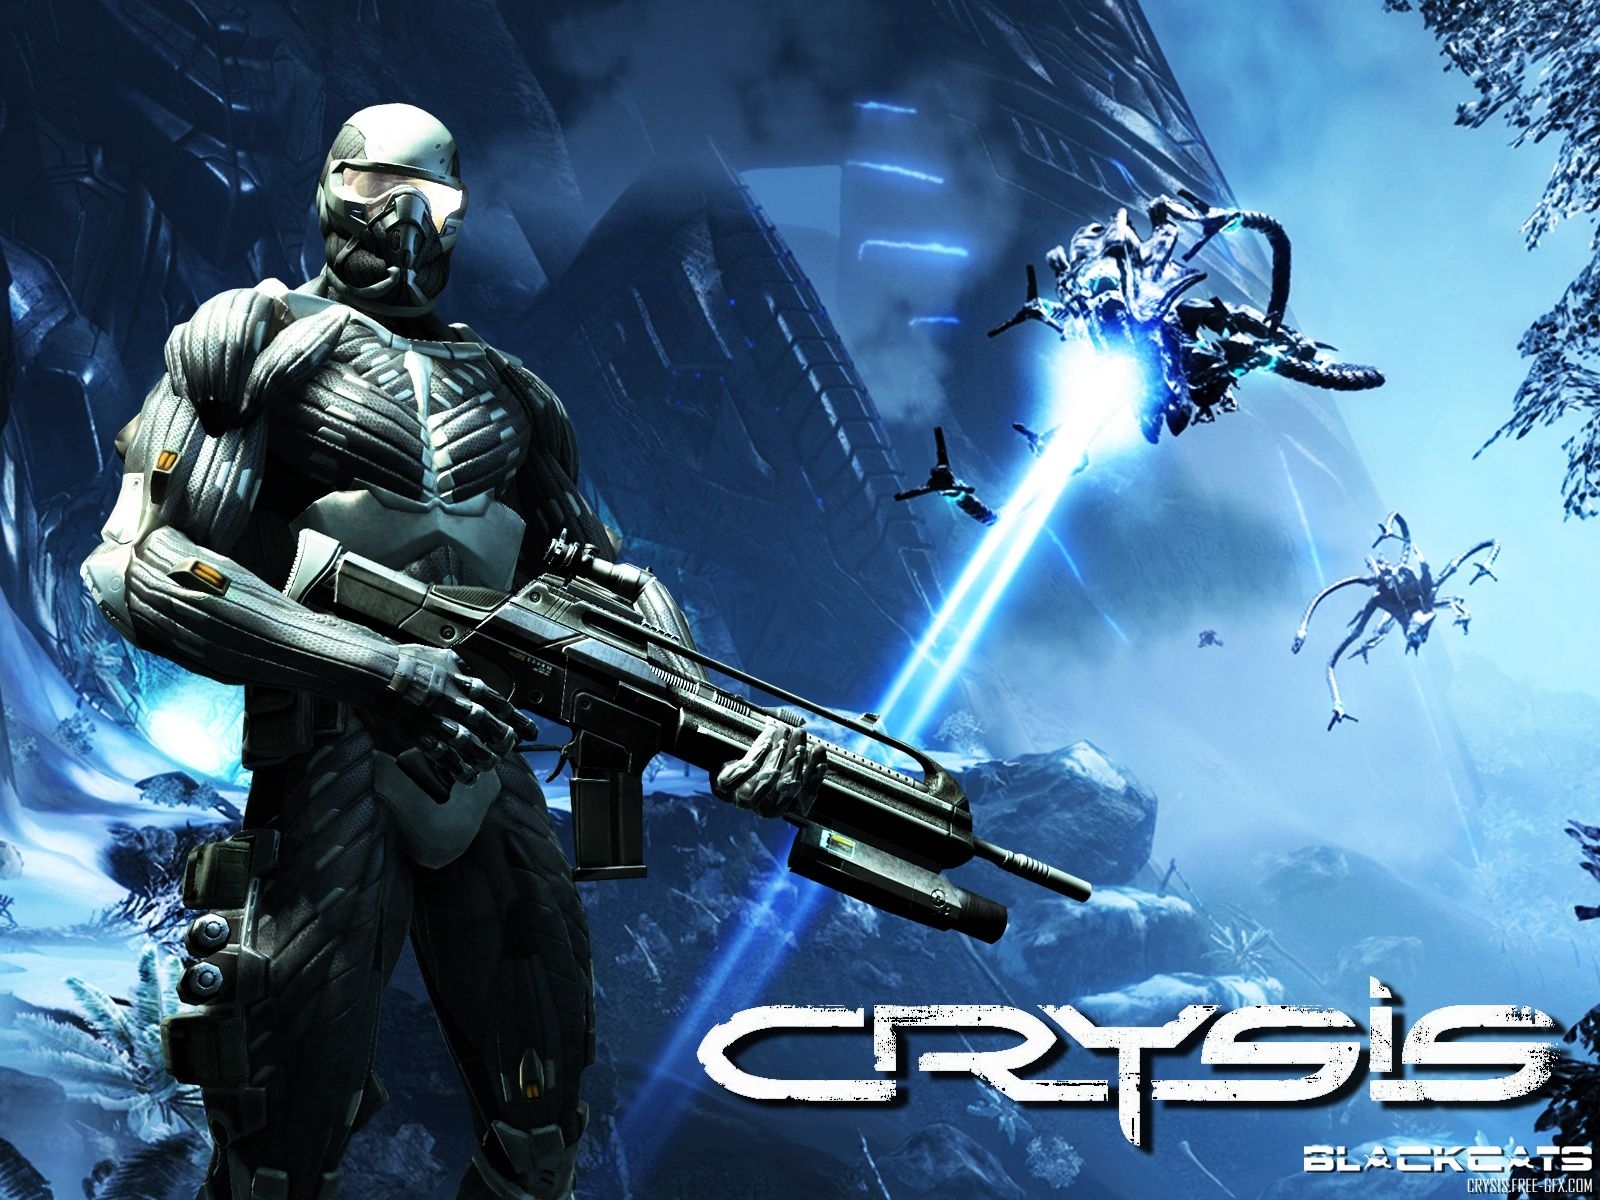 Скачать обои бесплатно Кризис (Crysis), Игры картинка на рабочий стол ПК